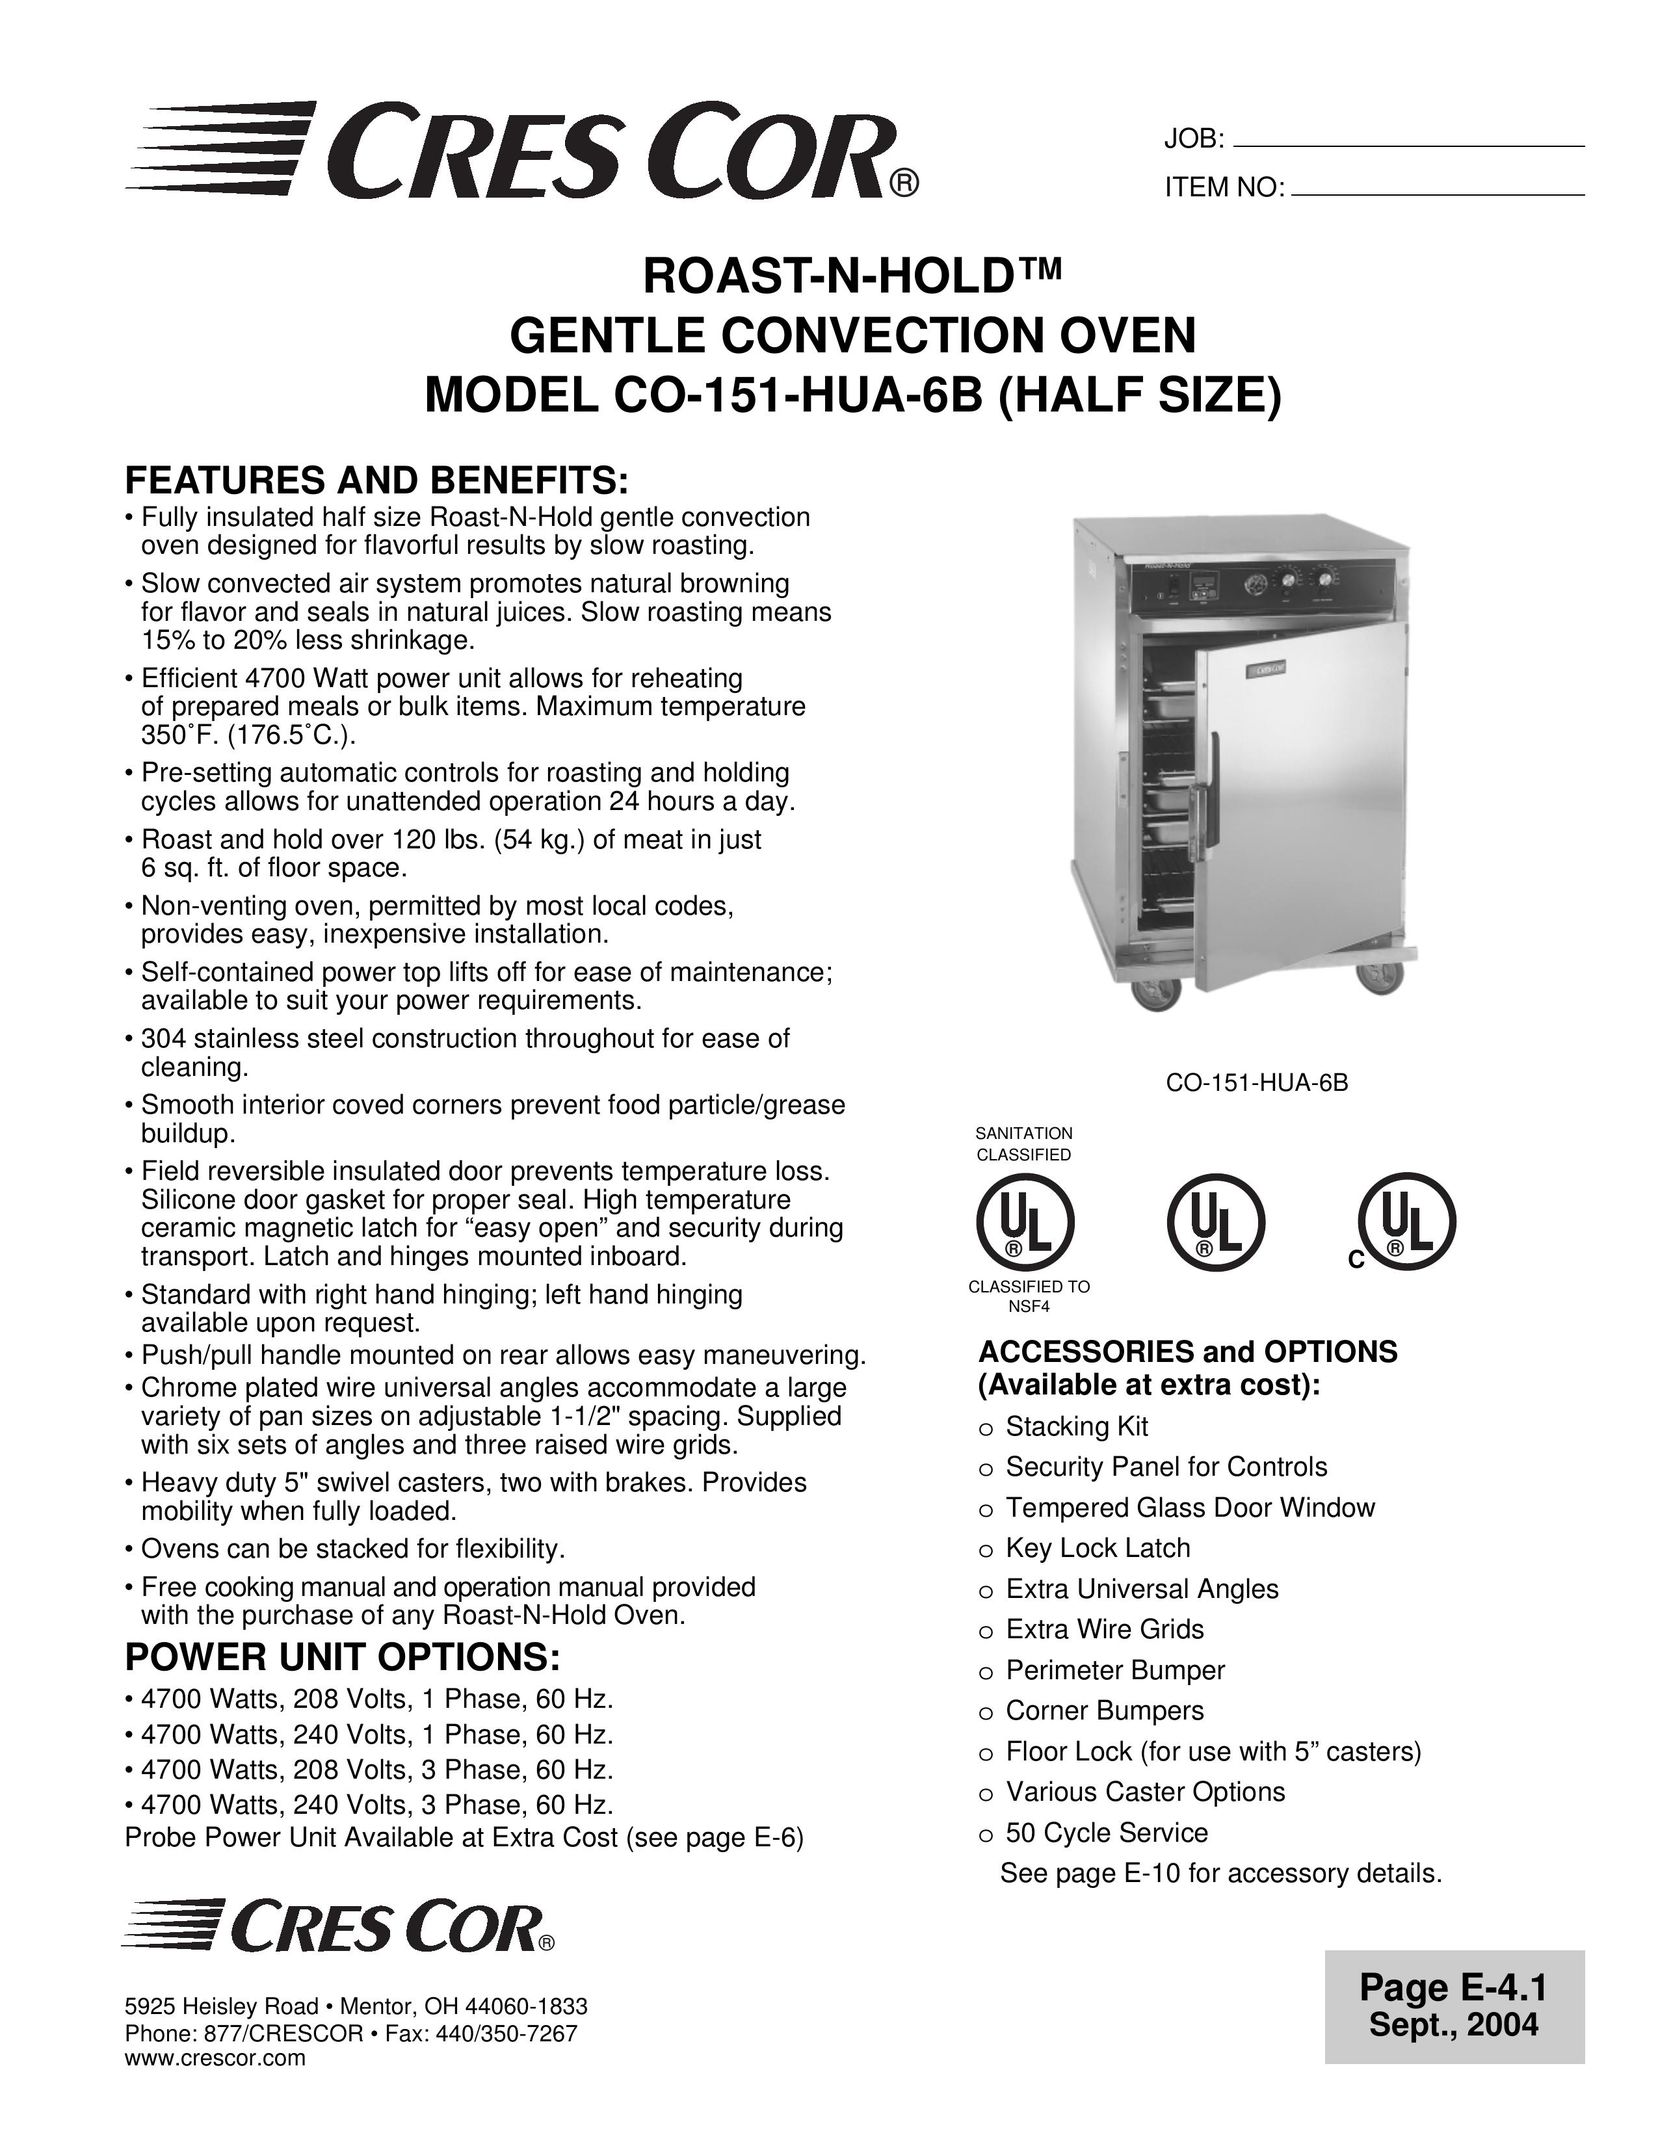 Cres Cor CO-151-HUA-6B Convection Oven User Manual